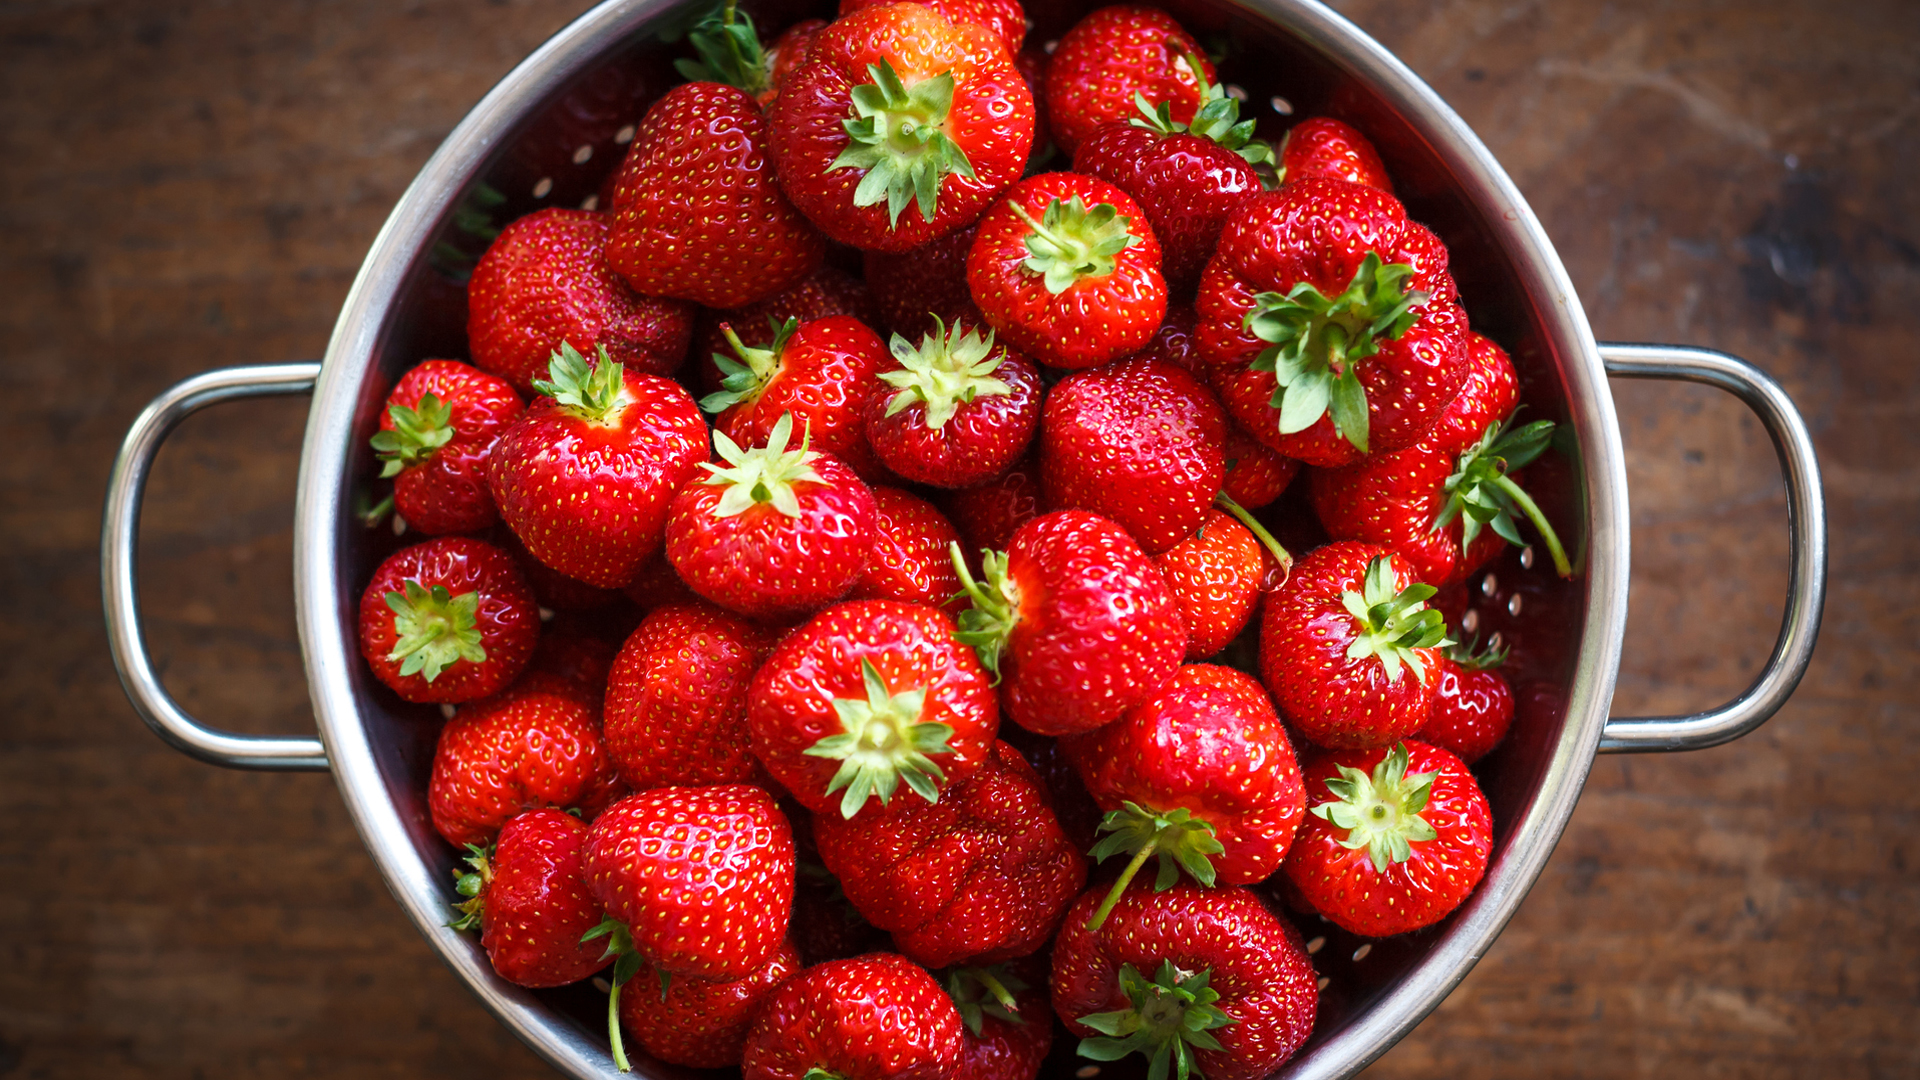 aardbeien zijn een goede suikerarme vrucht